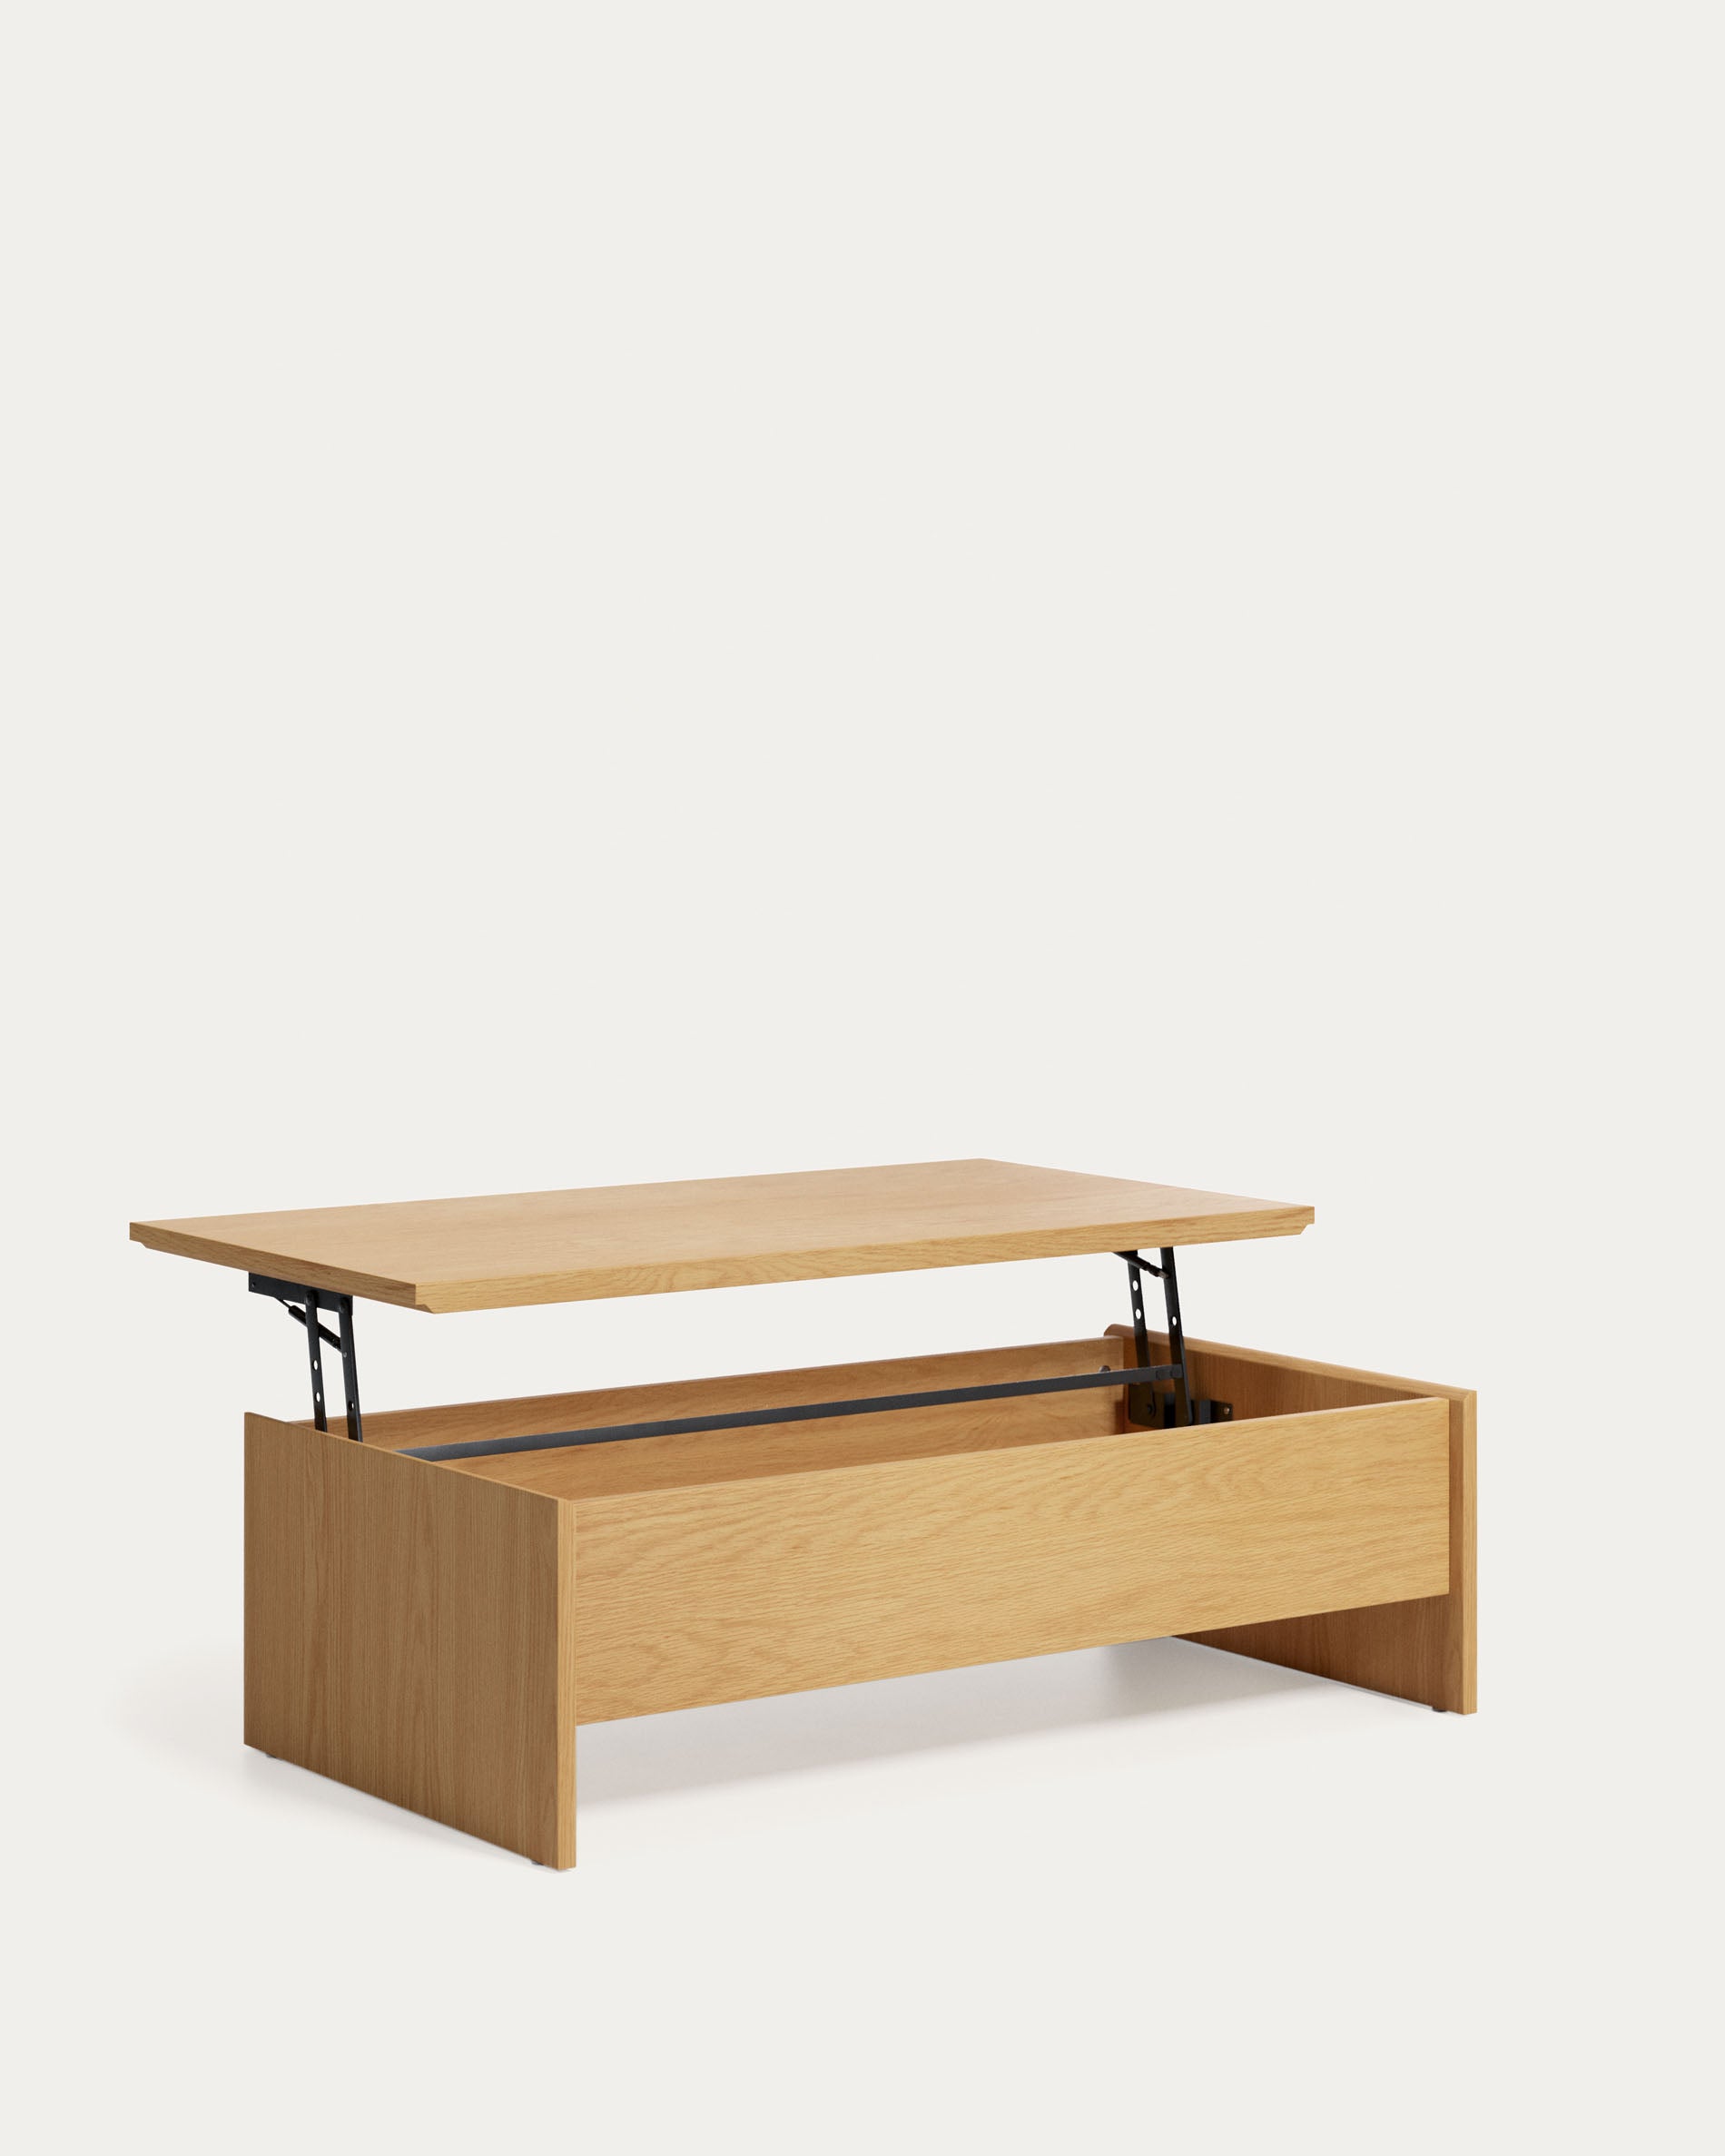 Abilen oak coffee table with raised top 110 x 60 cm FSC 100%